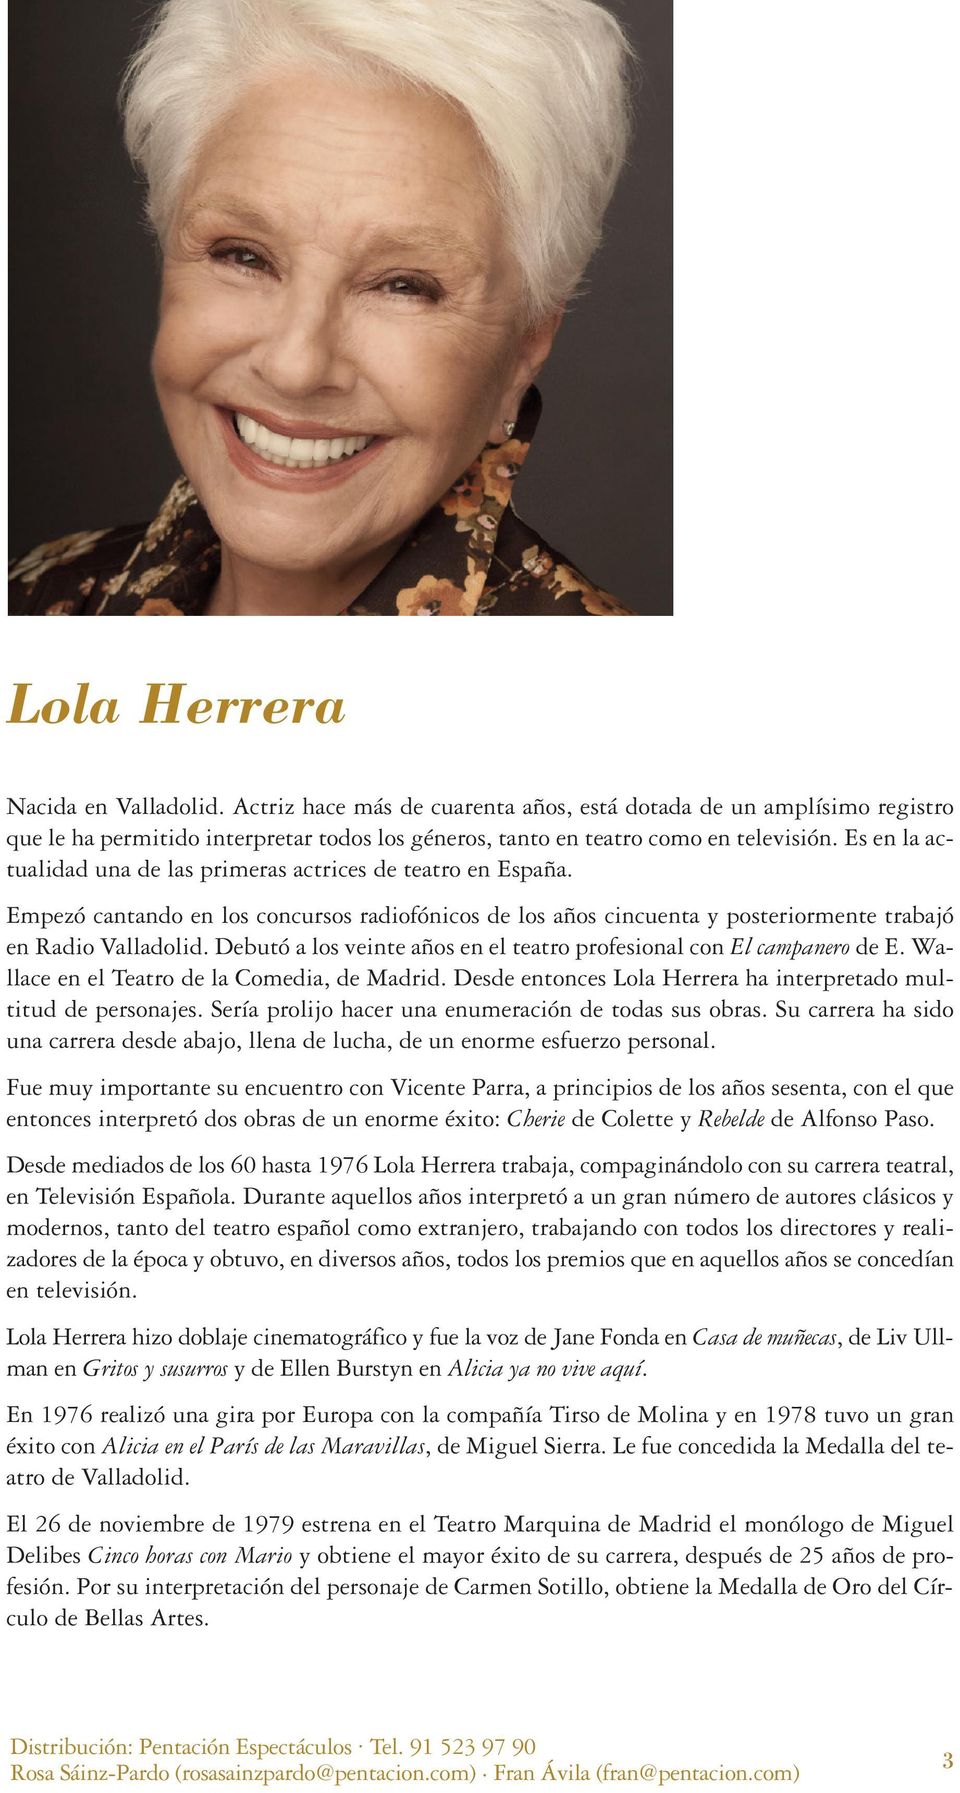 Debutó a los veinte años en el teatro profesional con El campanero de E. Wallace en el Teatro de la Comedia, de Madrid. Desde entonces Lola Herrera ha interpretado multitud de personajes.